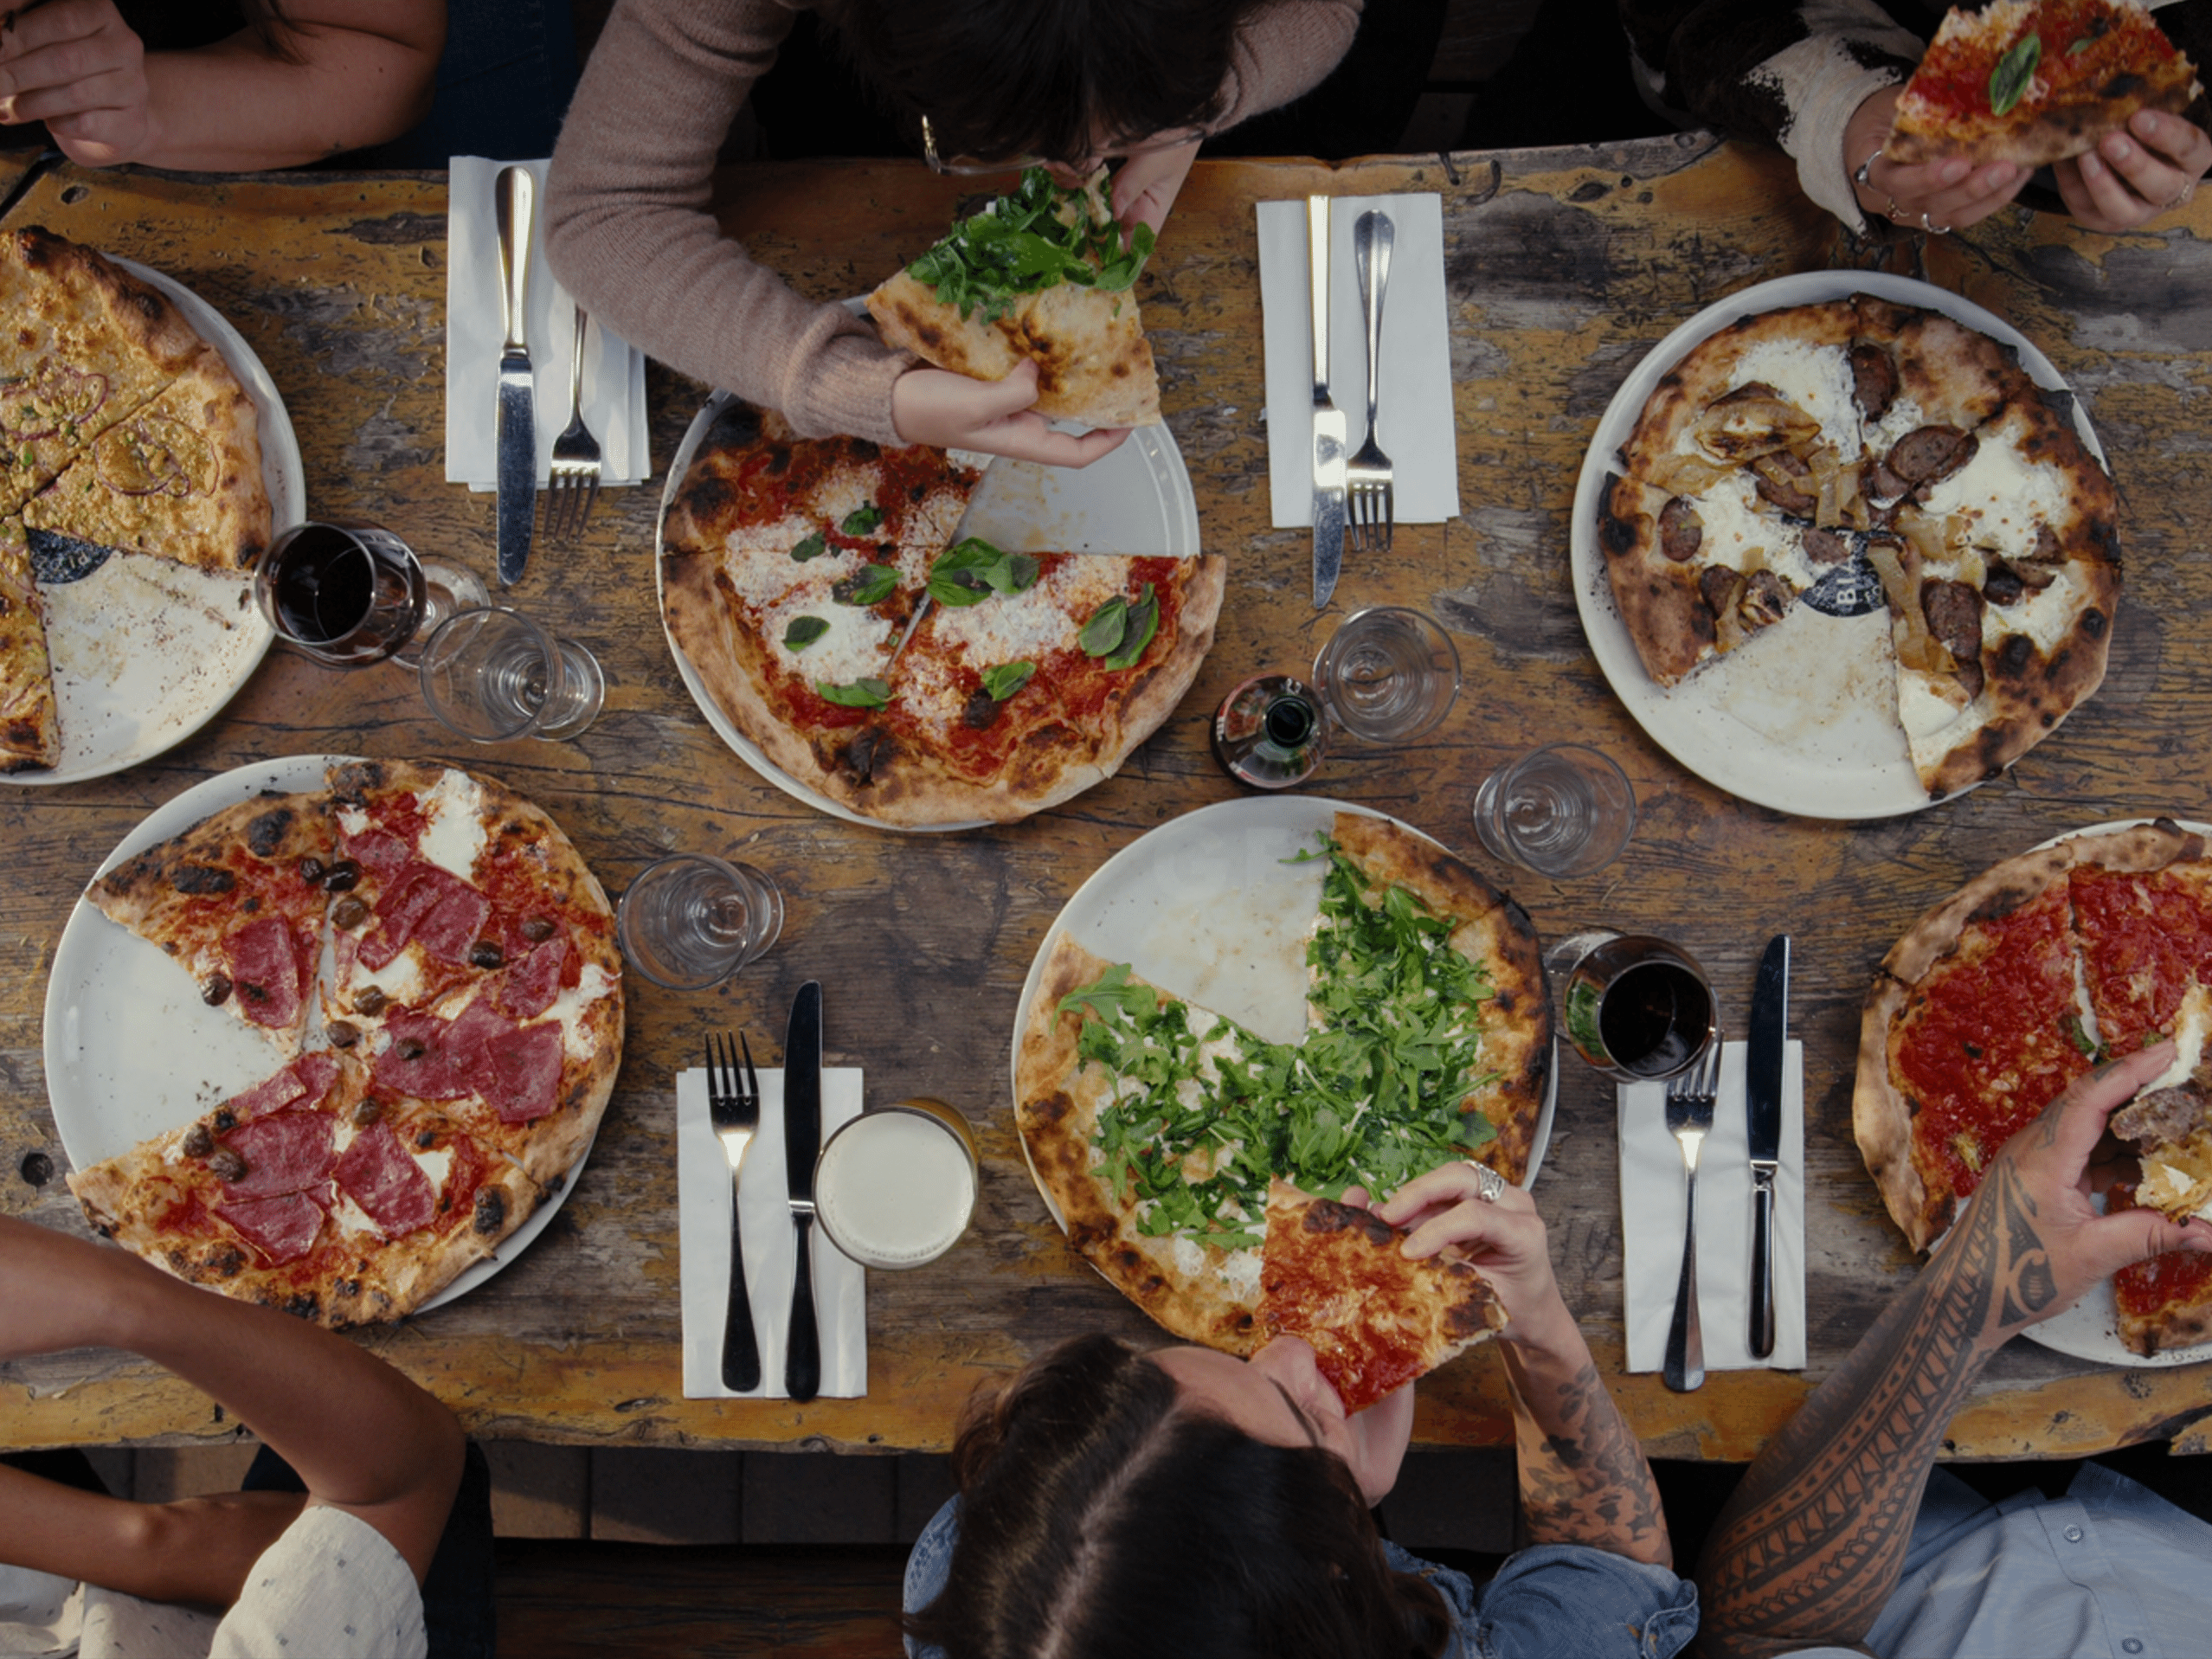 Os segredos da pizza perfeita e onde comer as melhores em SP - Quem